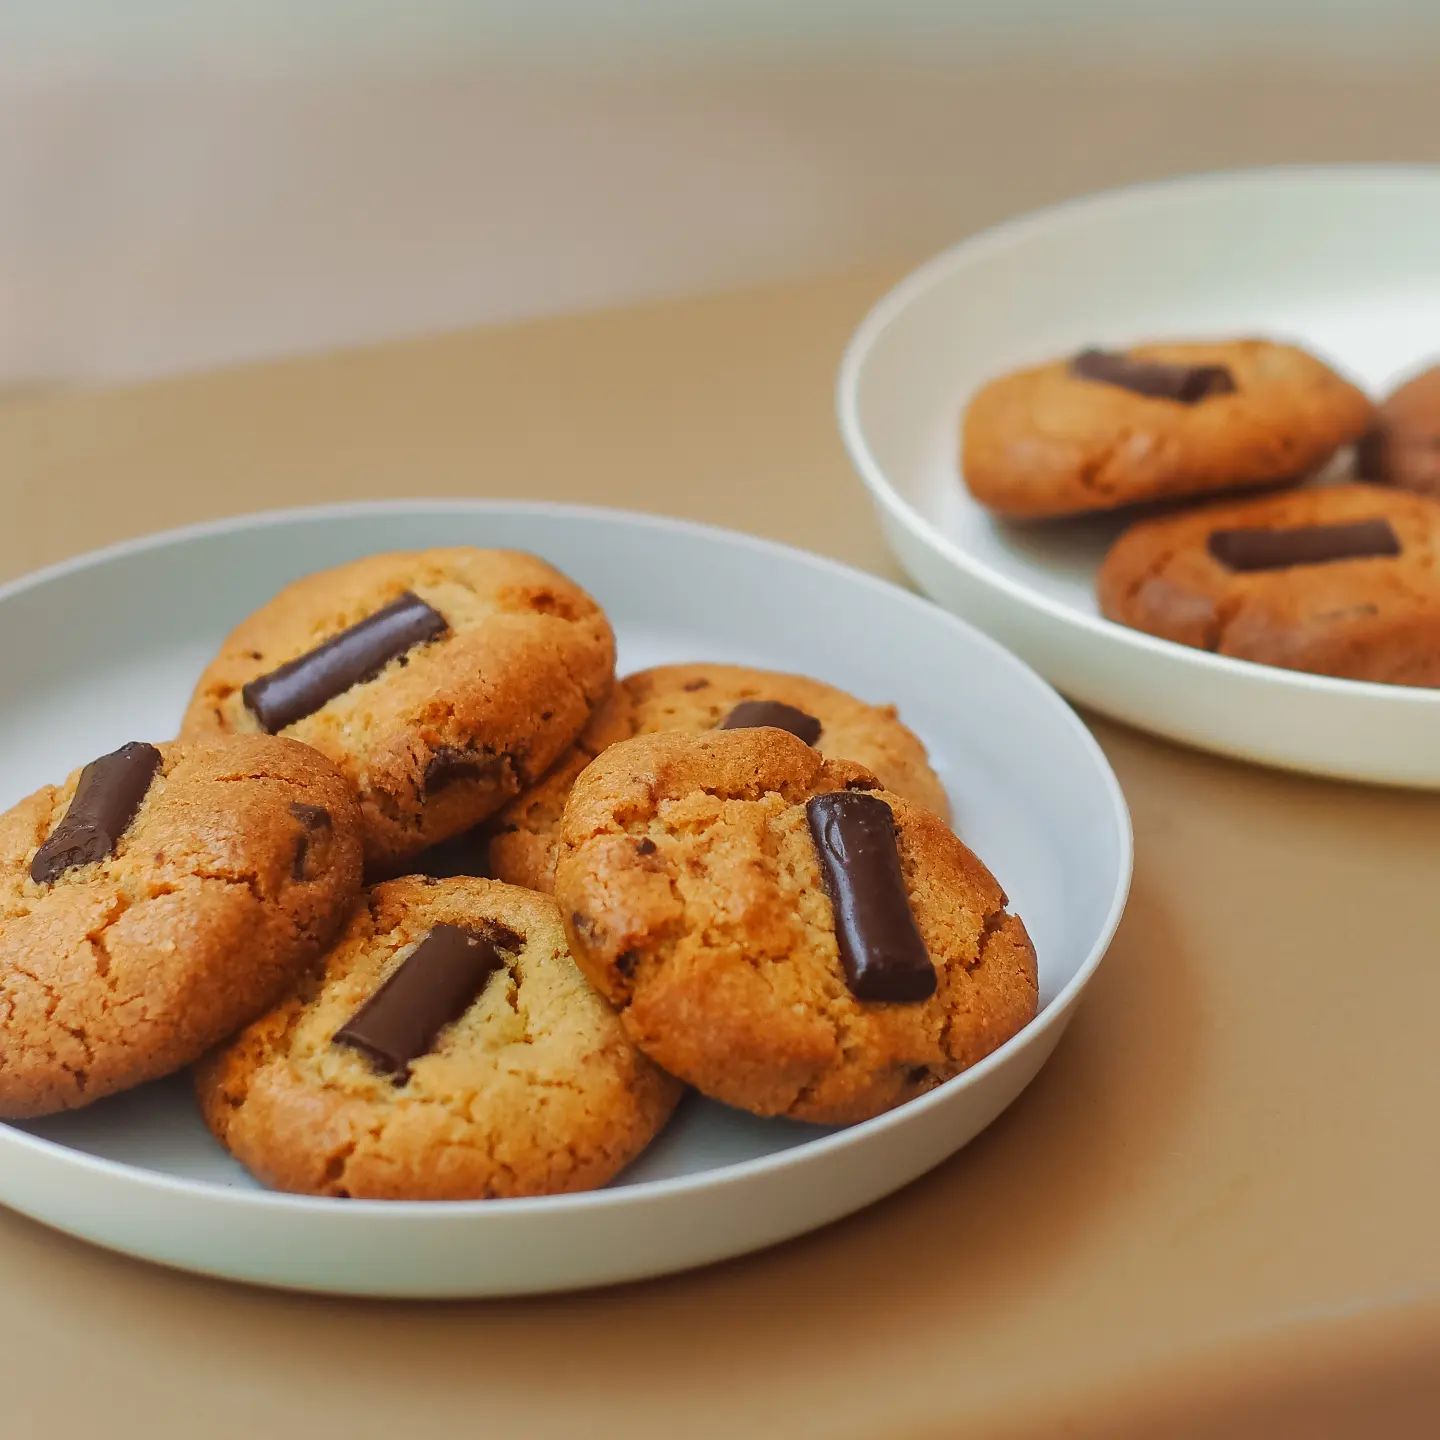 mervyns madeleines chocolate hazelnut cookies